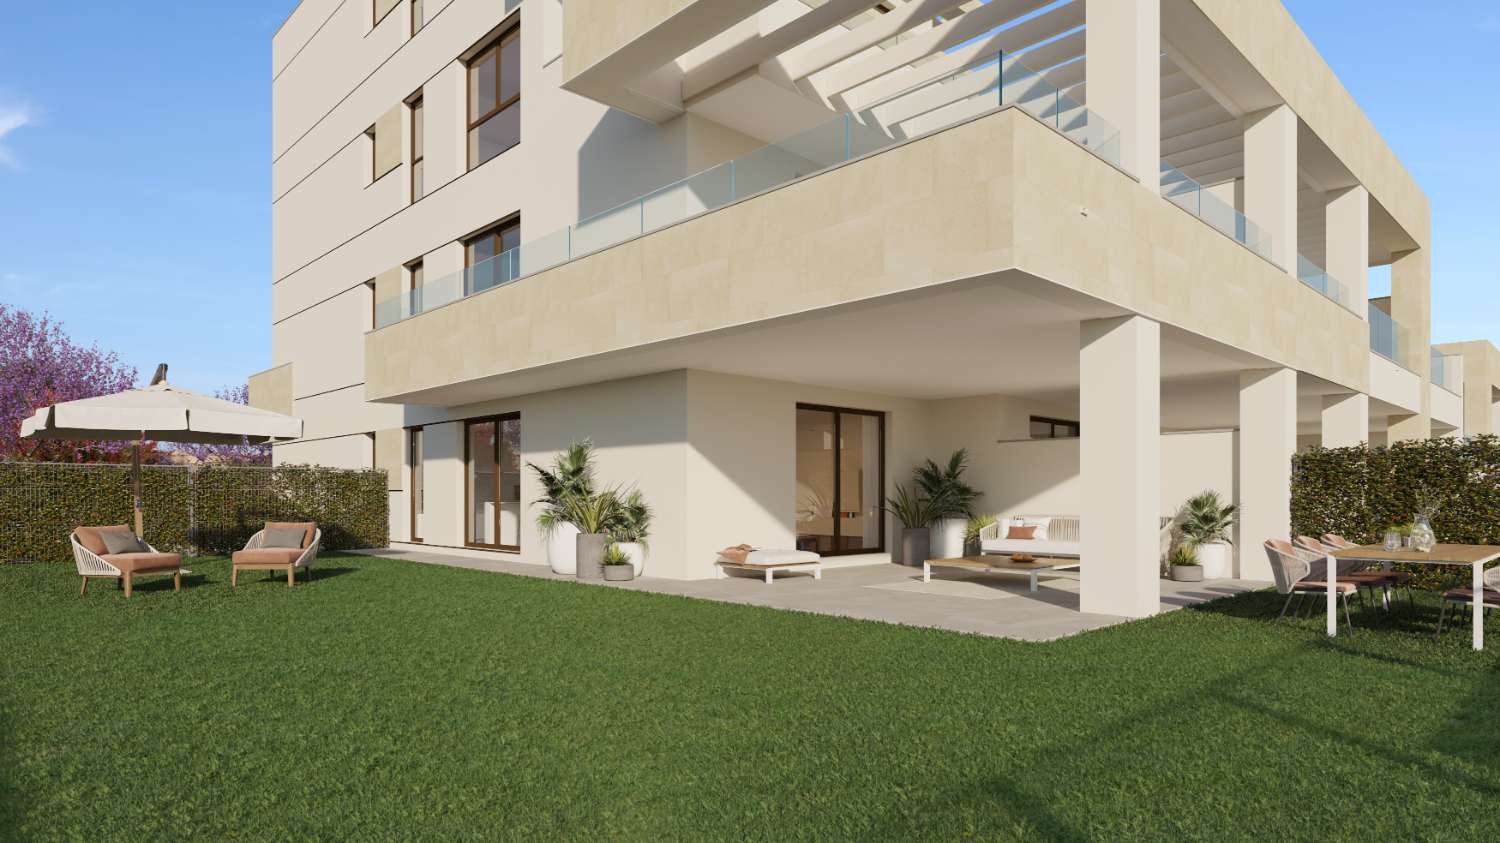 New Apartment with Private Garden in Estepona - Costa del Sol